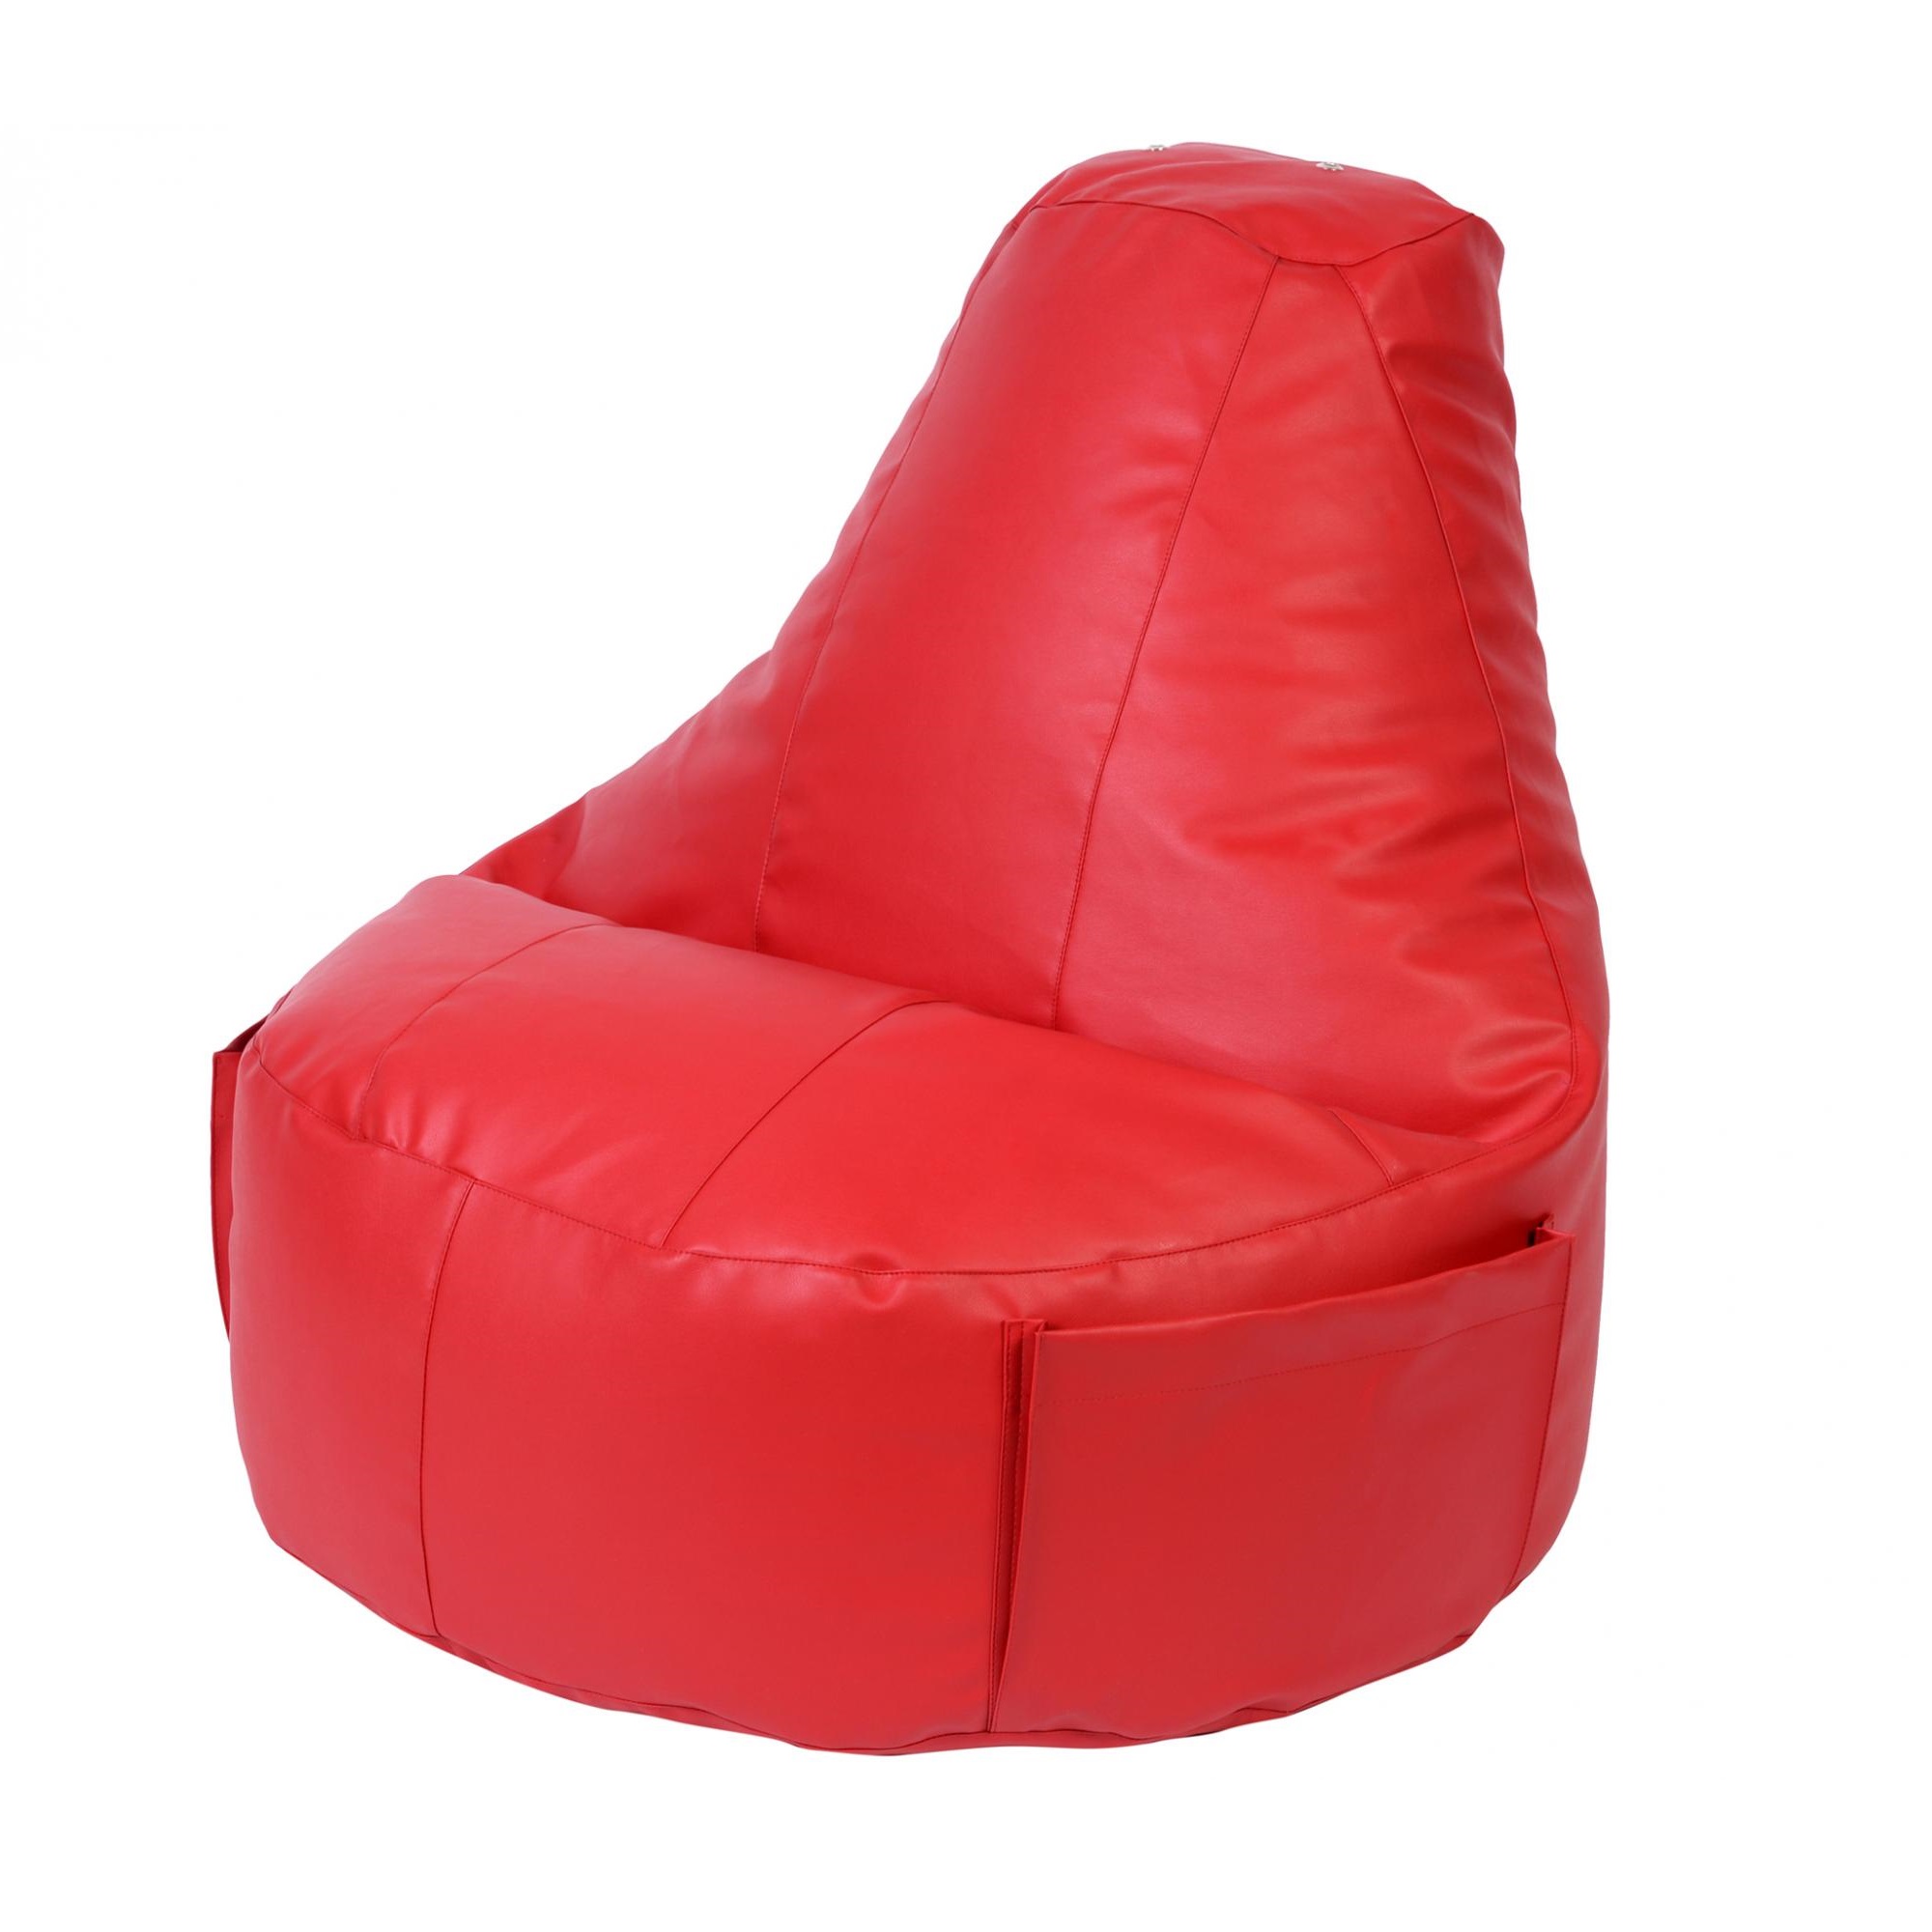 Кресло Dreambag Comfort красное экокожа 150x90 см кресло мешок dreambag голубая экокожа 3xl 150x110